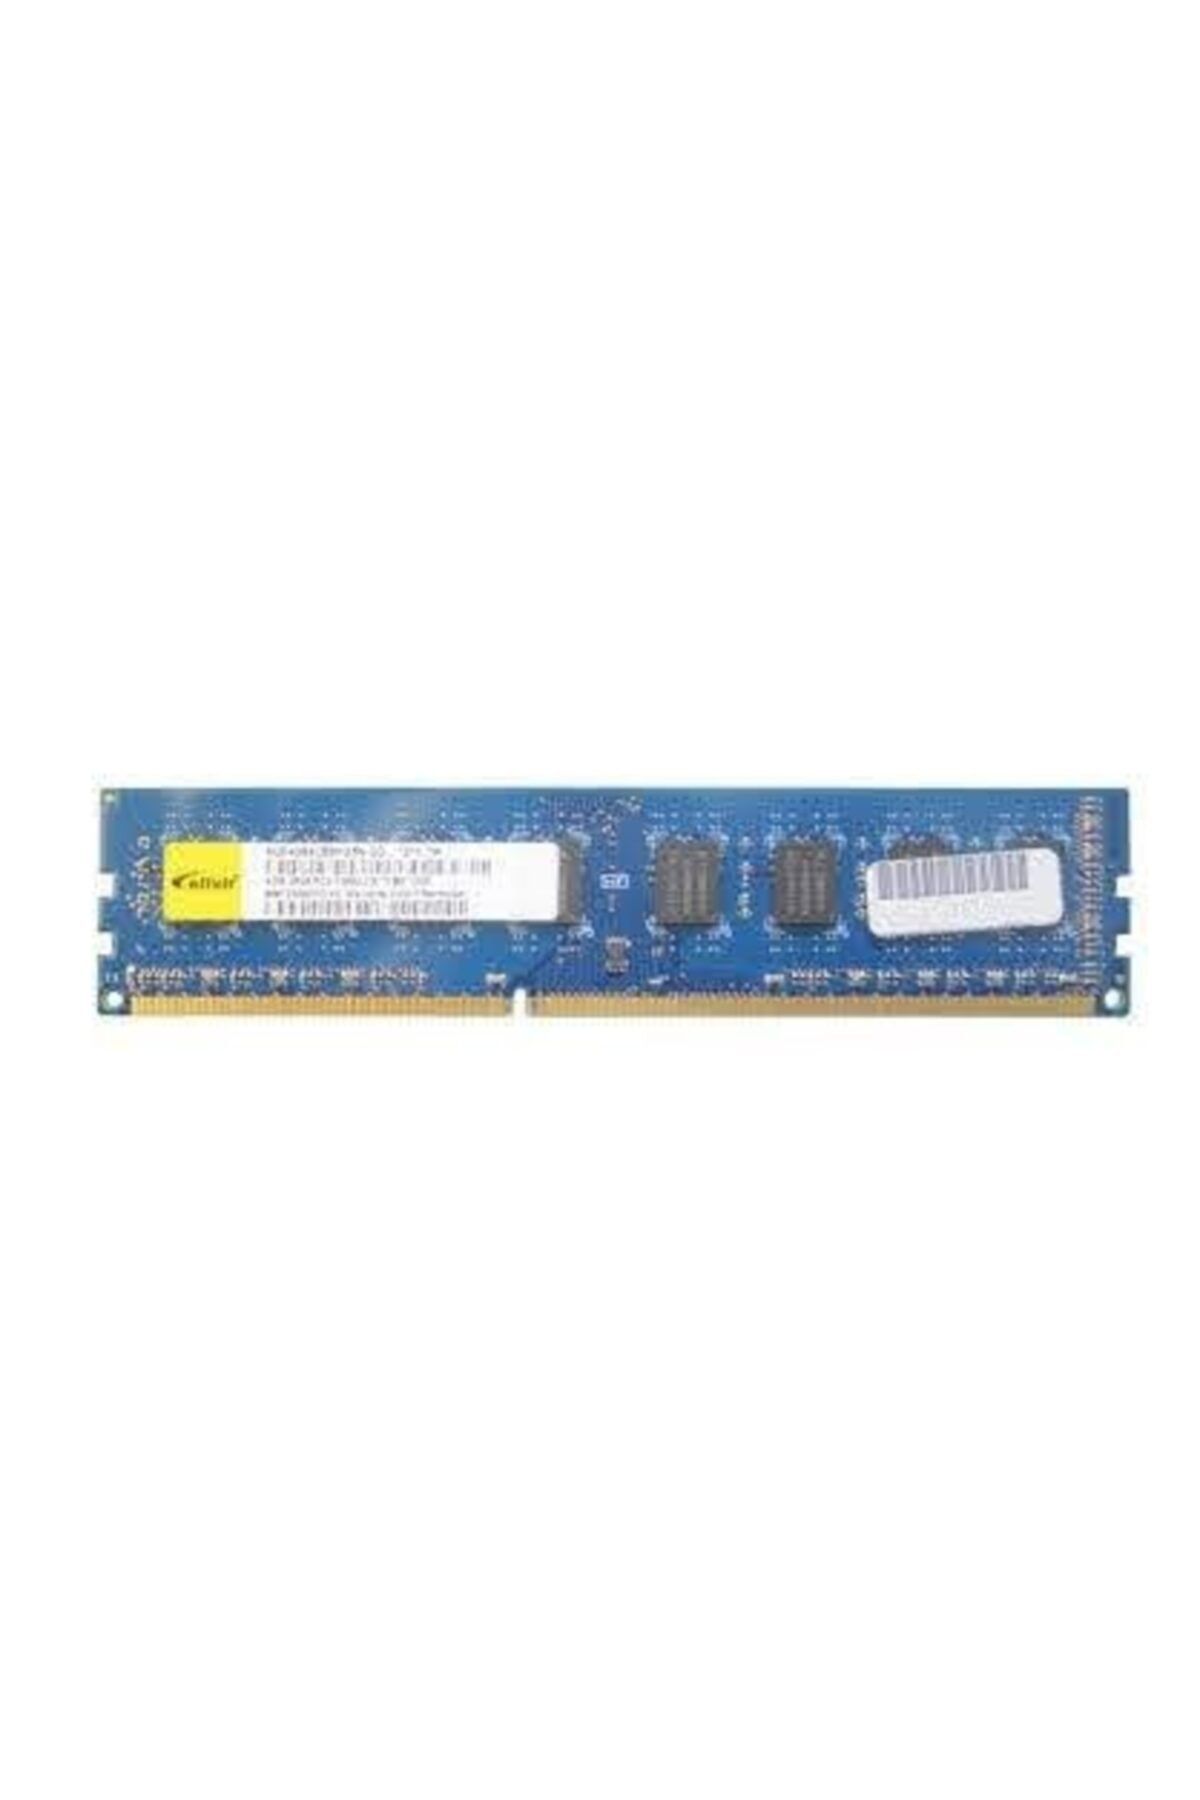 Barrette RAM Elixir 2Go DDR3 PC3-10600U 1333 Mhz M2Y2G64CB8HC5N-CG